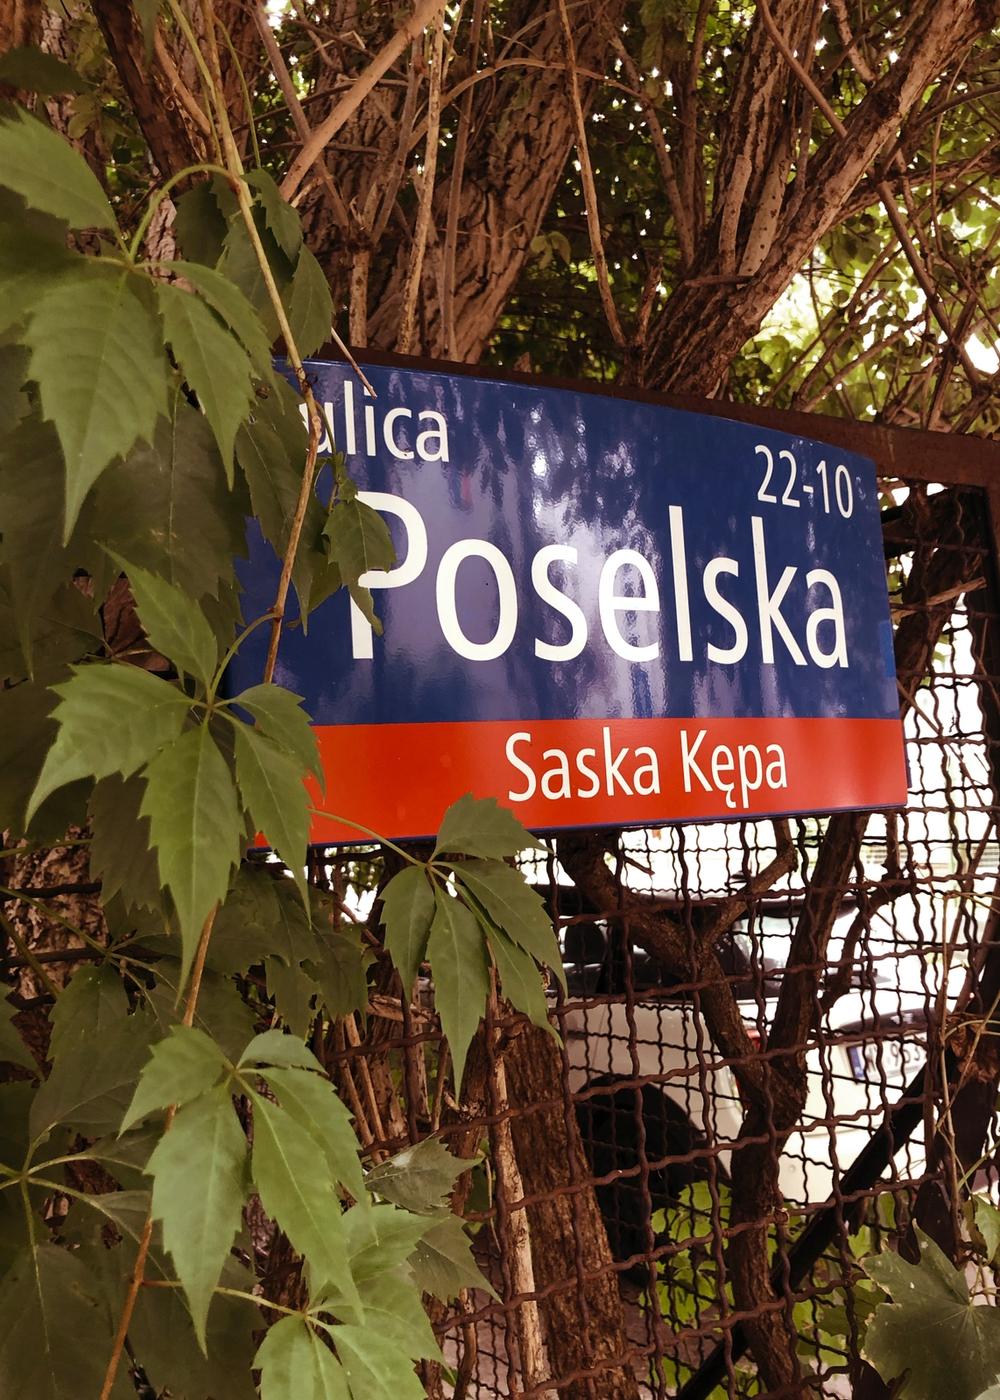 Zdjęcie znaku ulicy "Poselska"